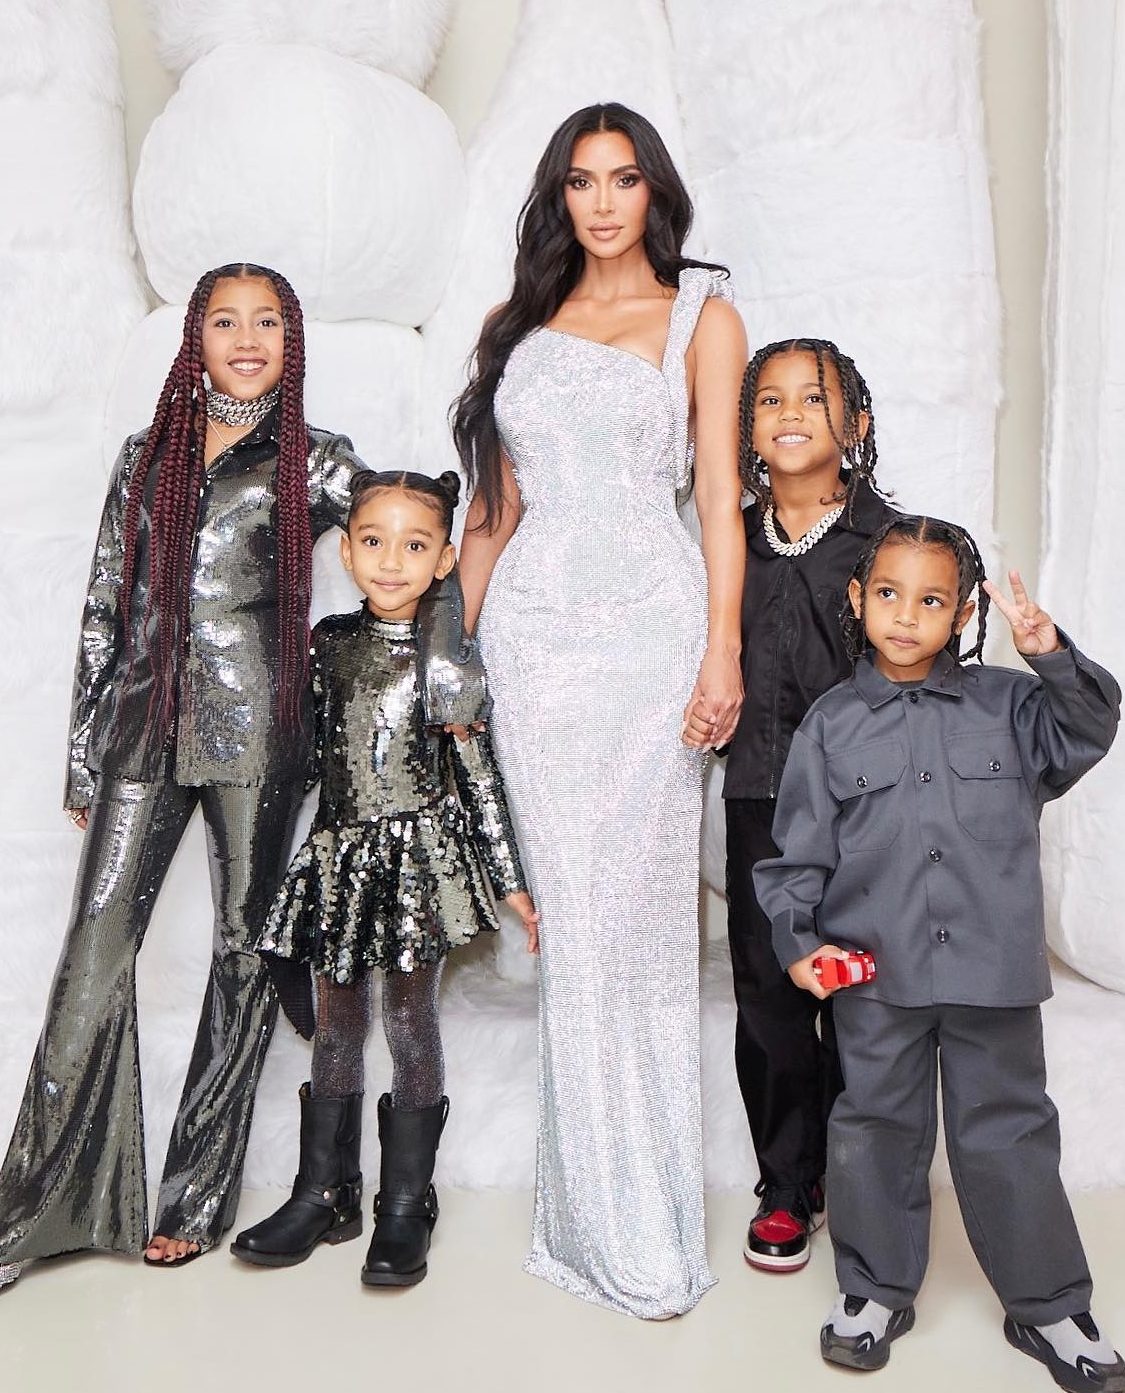 Kim también abrió sus propios desafíos al criar a sus cuatro hijos con su ex esposo Kanye West.